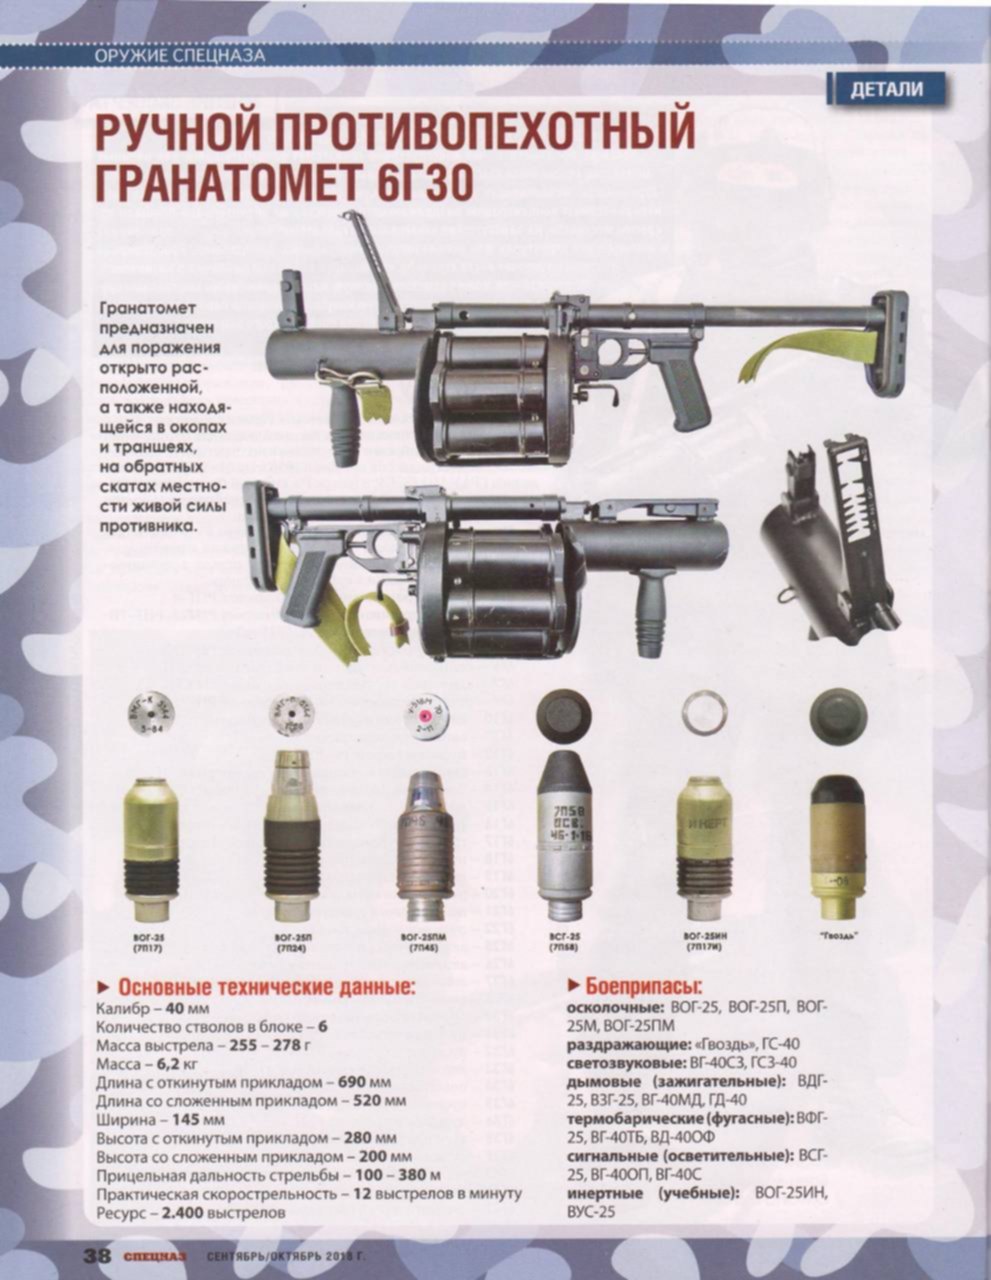 Гранатомет сканворд. 40 Мм гранатомет ГП-25 (ГП-30). 40-Мм ручной шестизарядный револьверный гранатомет РГ-6 (6г30). Ручной гранатомёт Вог-25. 6г30 гранатомёт ТТХ.